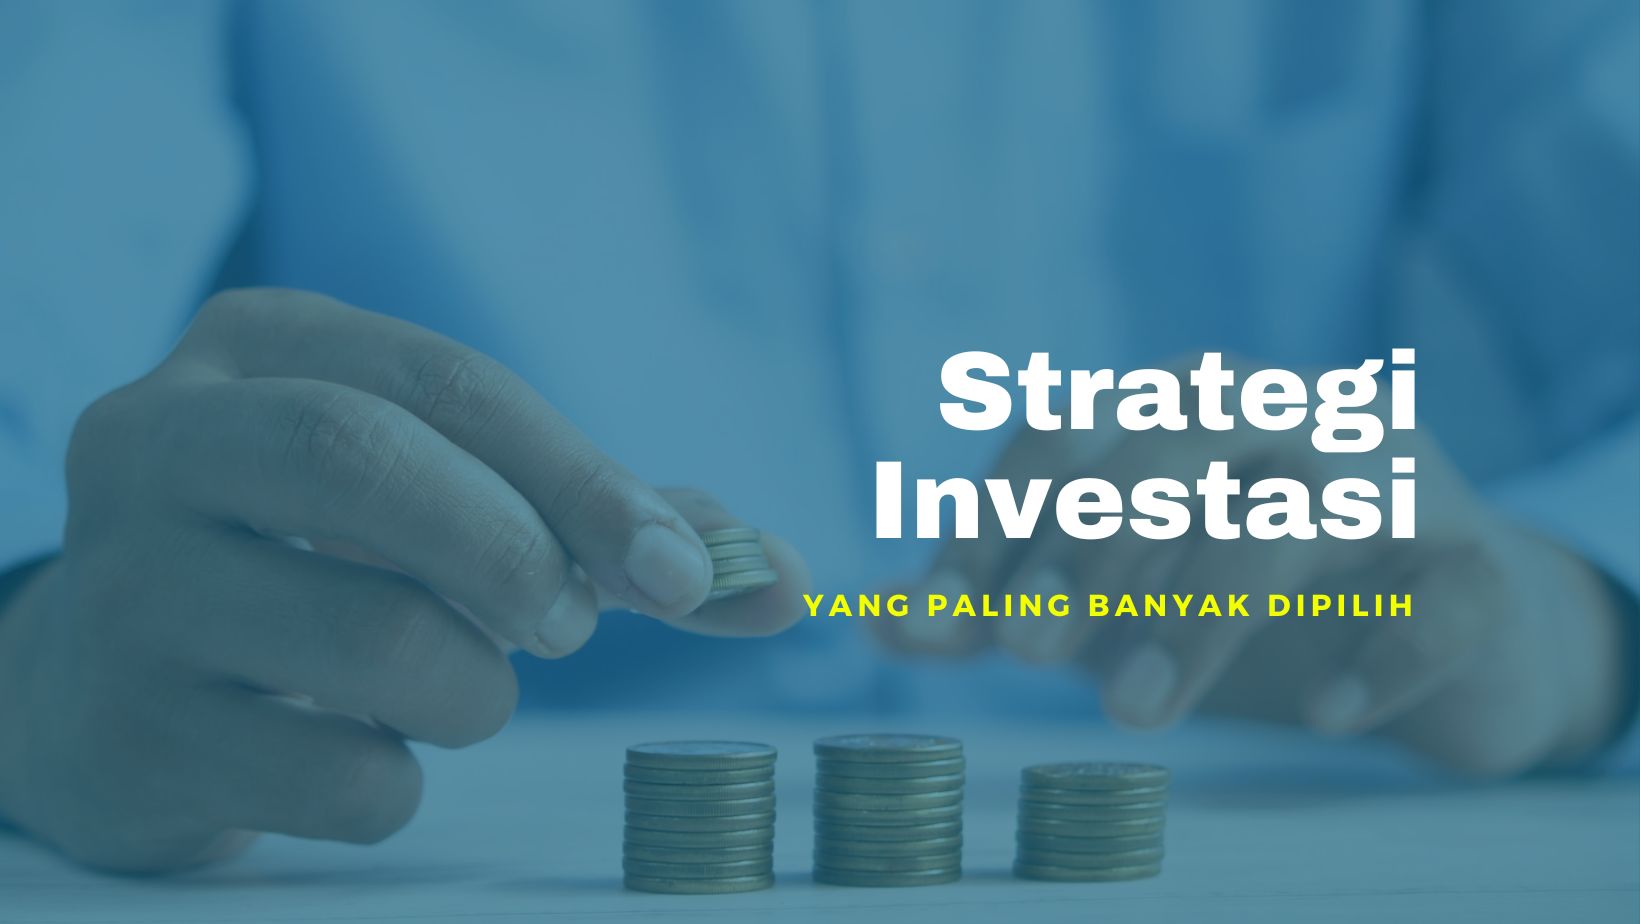 Strategi Investasi yang Paling Banyak Dipilih